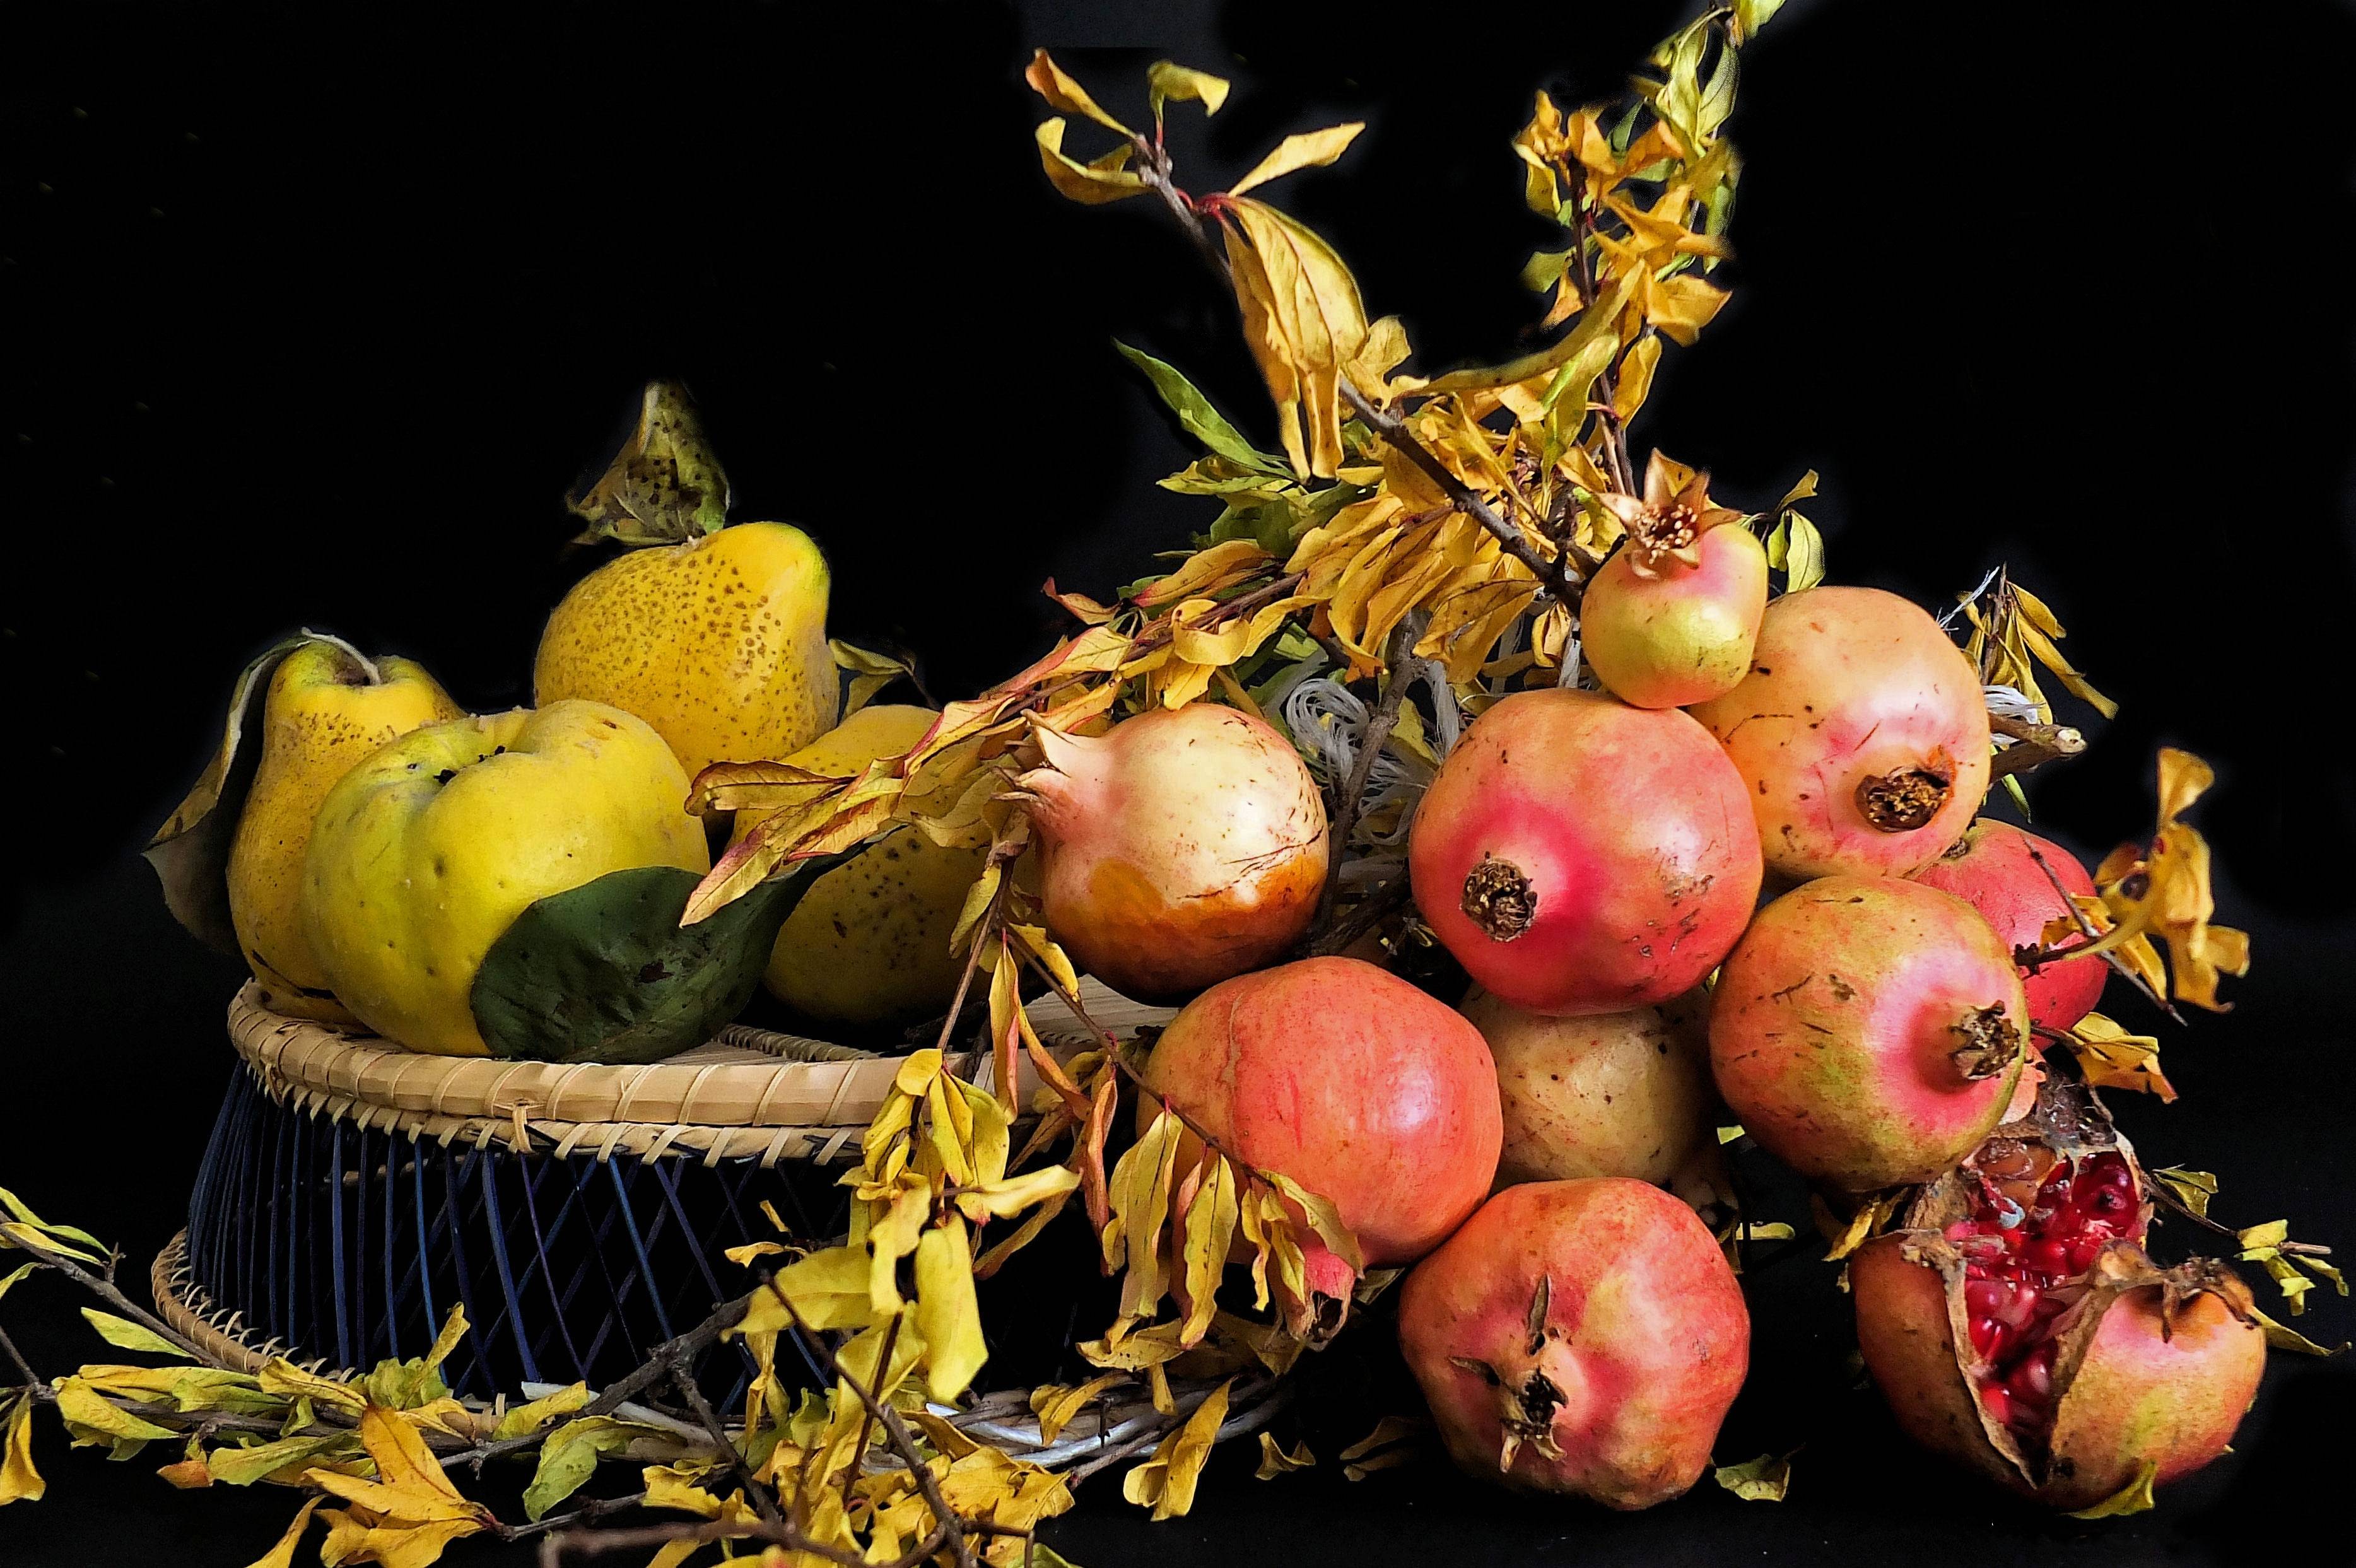 Фото фрукты гранат яблоки - бесплатные картинки на Fonwall